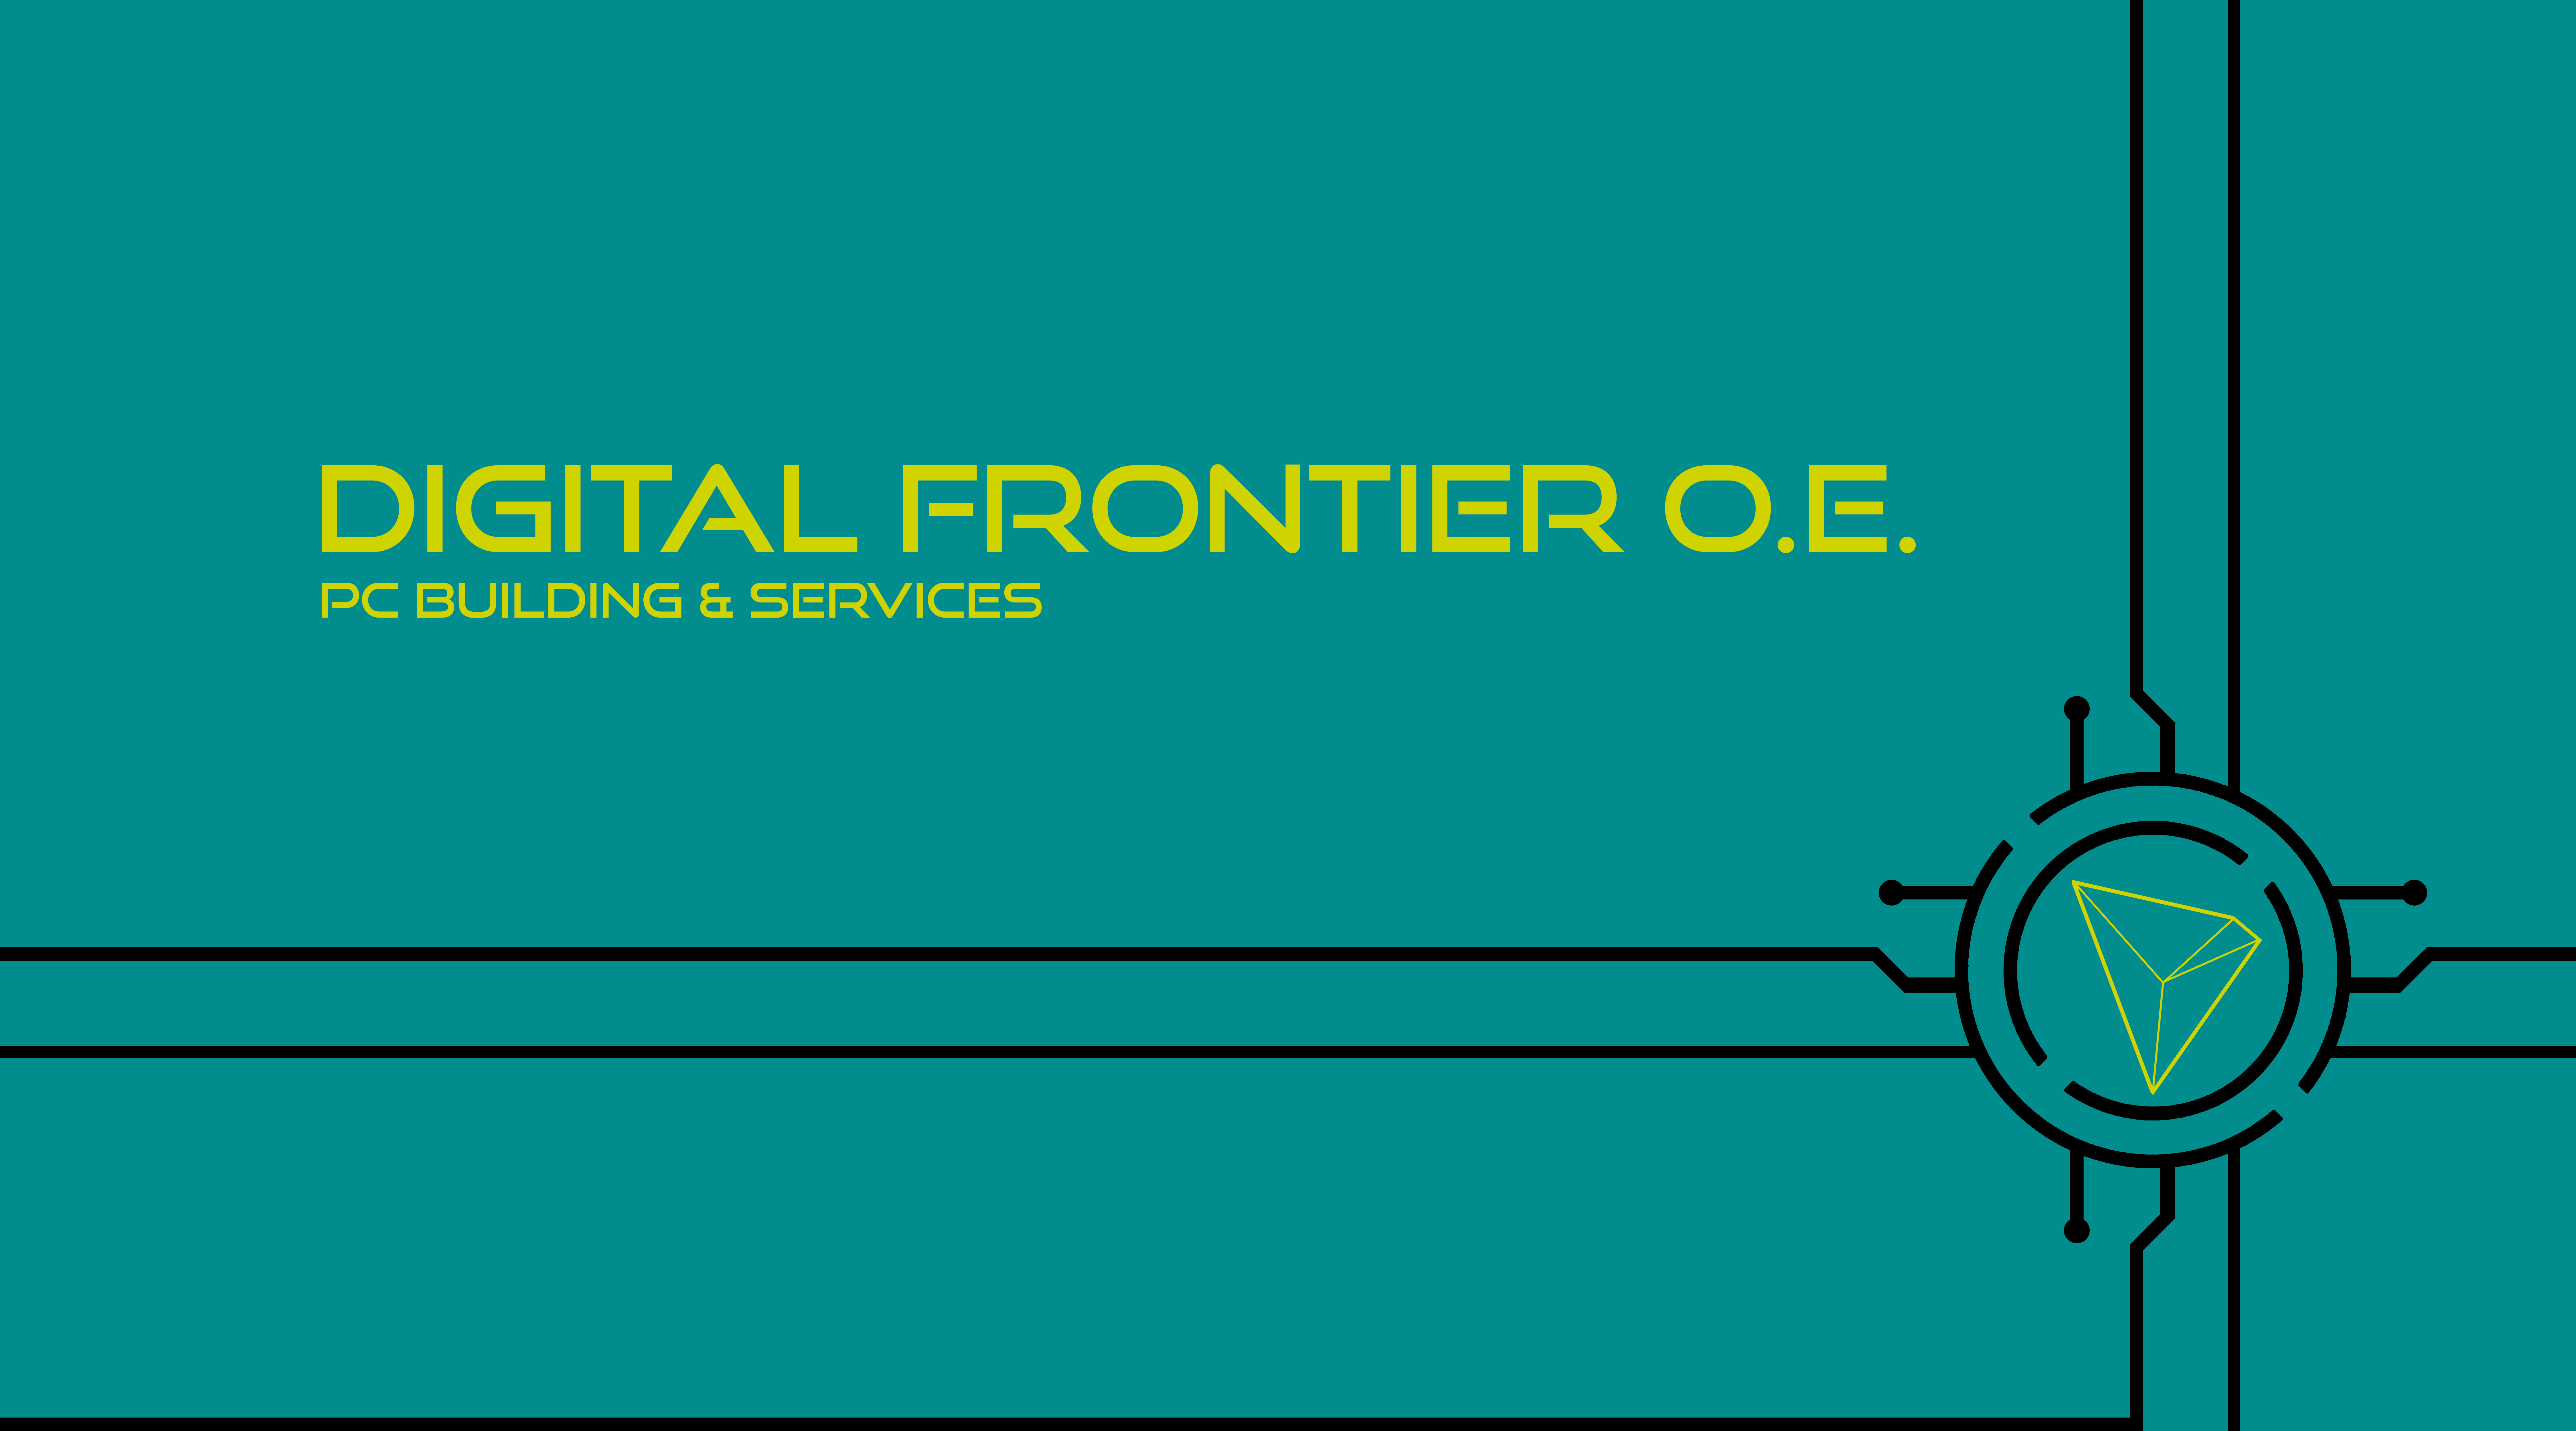 Digital Frontier O.E.